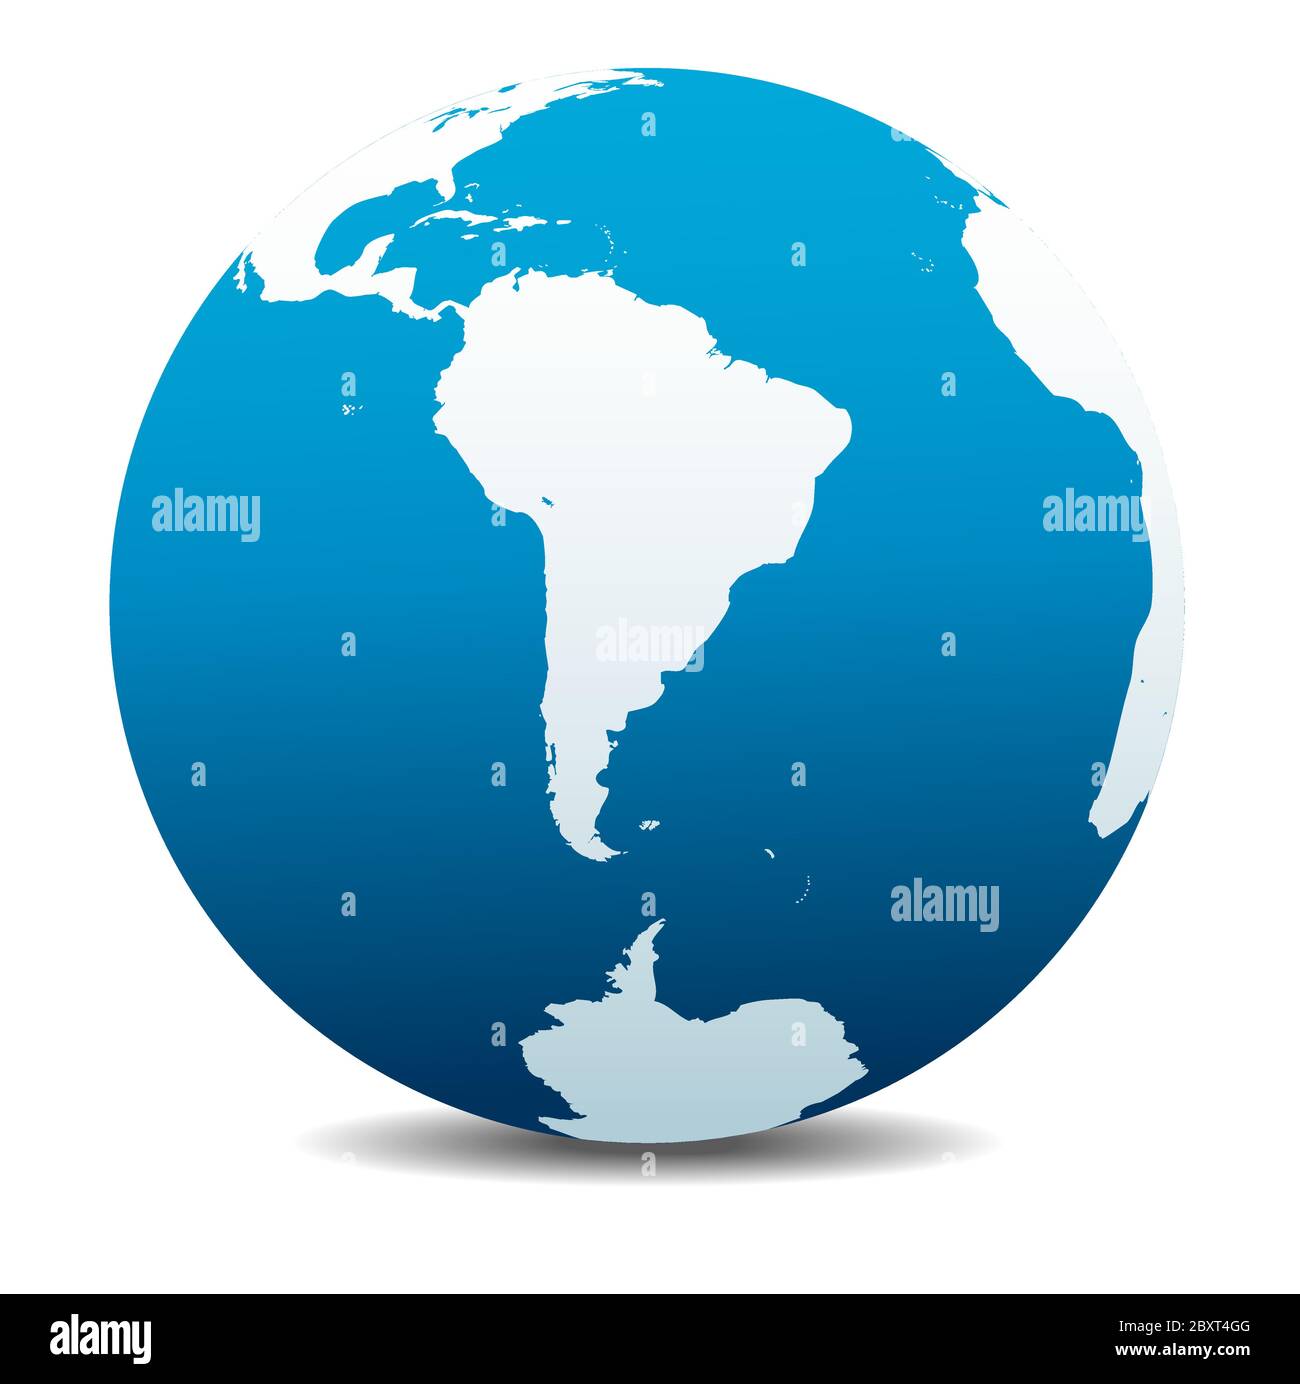 Amérique du Sud et pôle Sud Global Vector Map icône du globe terrestre, Terre. Tous les éléments se trouvent sur des calques individuels dans le fichier vectoriel. Illustration de Vecteur